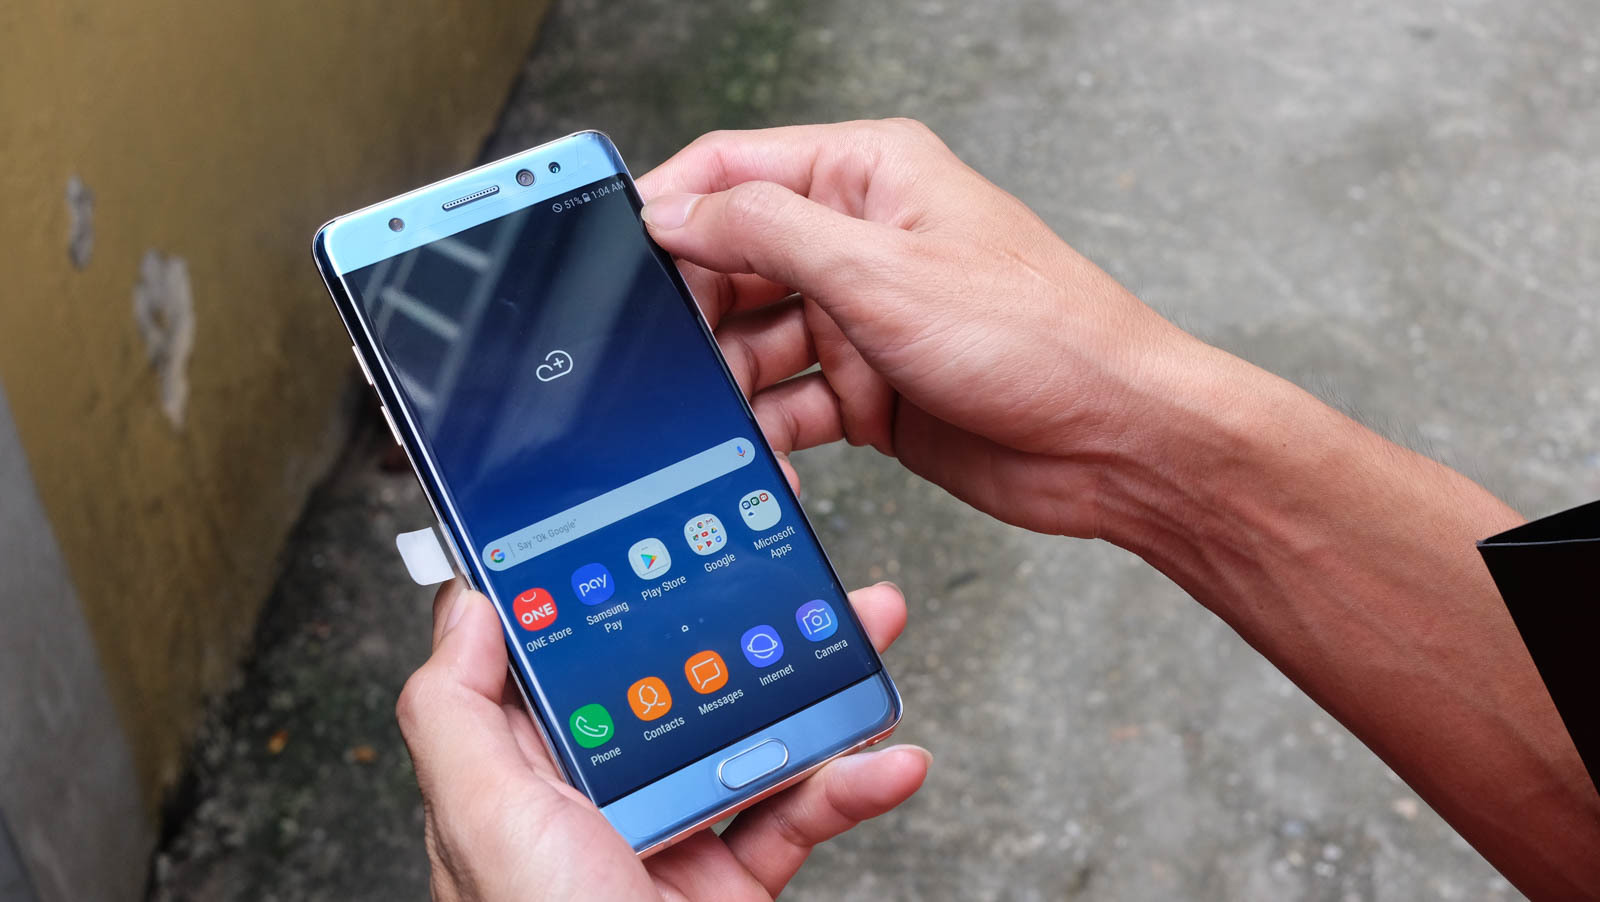 Cận cảnh chiếc Galaxy Note 7 Refurbished đầu tiên tại VN, giá 15 triệu